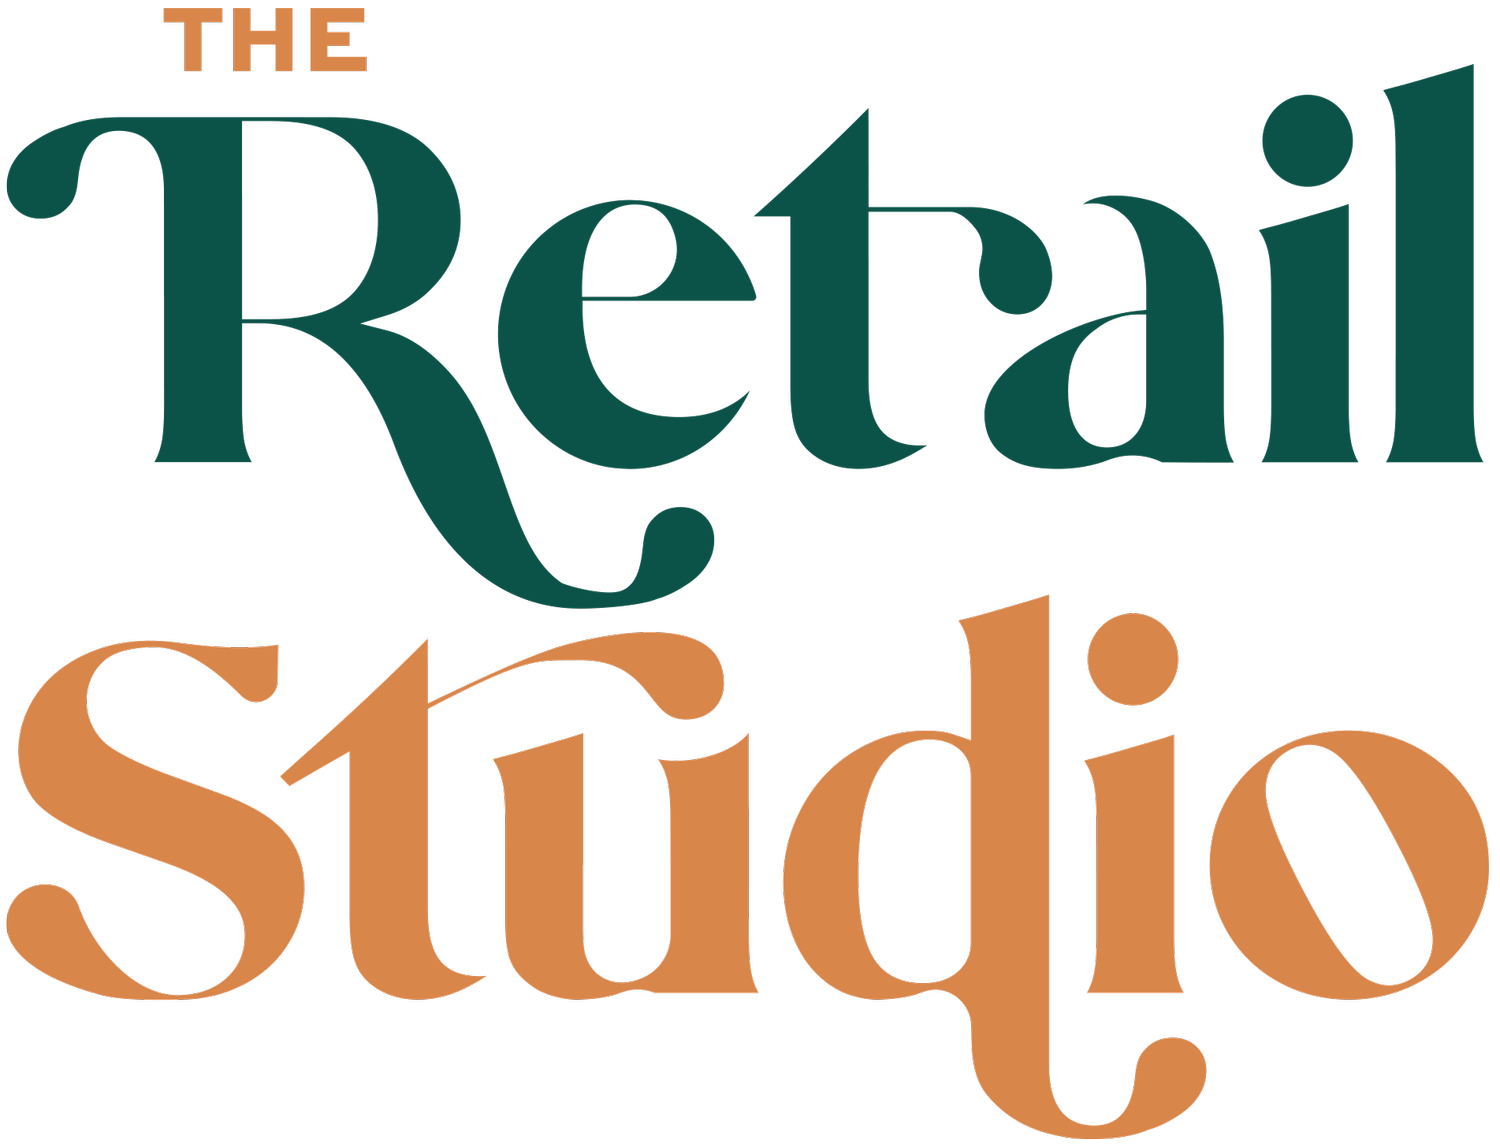 The Retail Studio